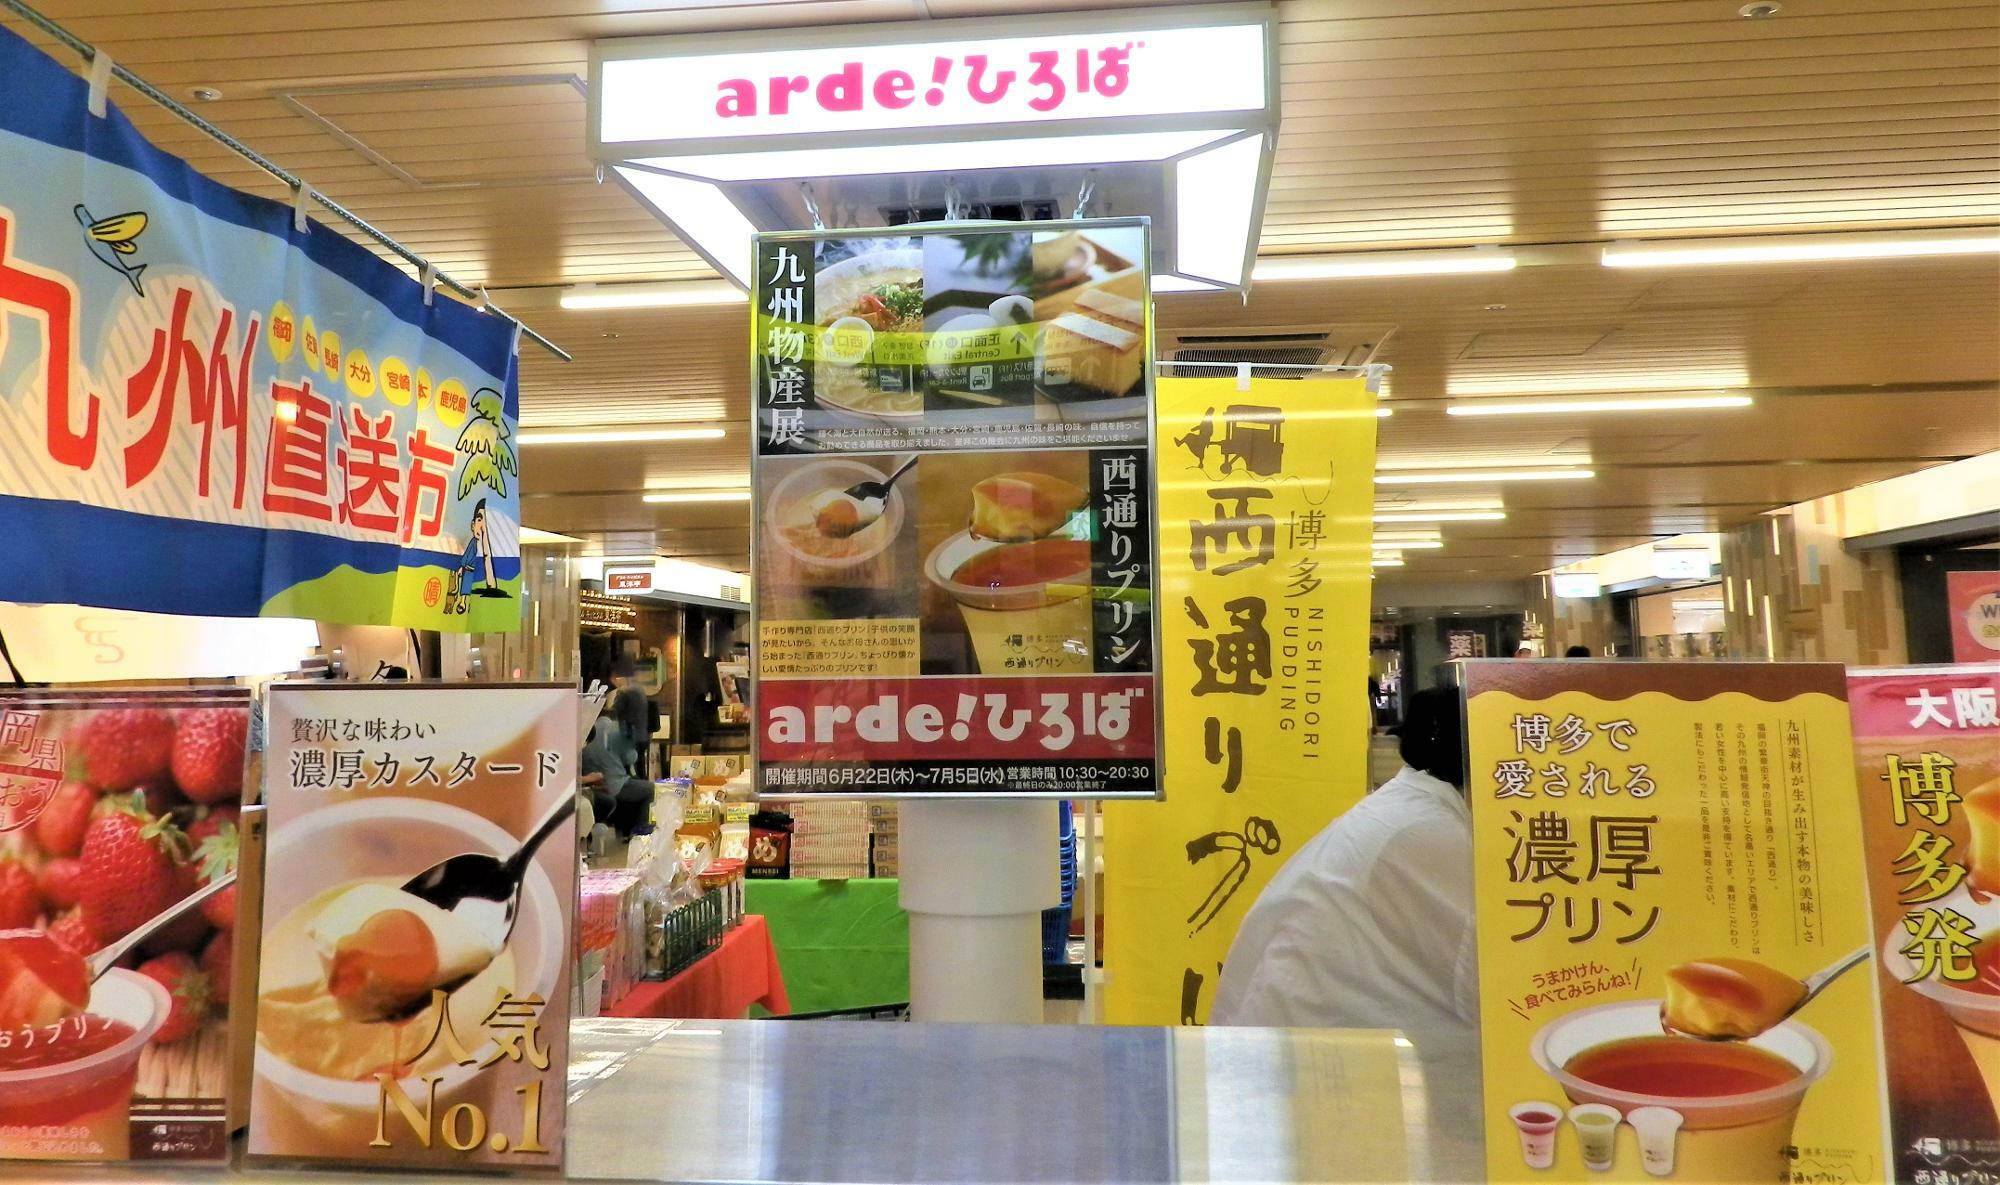 期間限定ショップ「九州物産展」「西通りプリン」が開店中のアルデひろば。